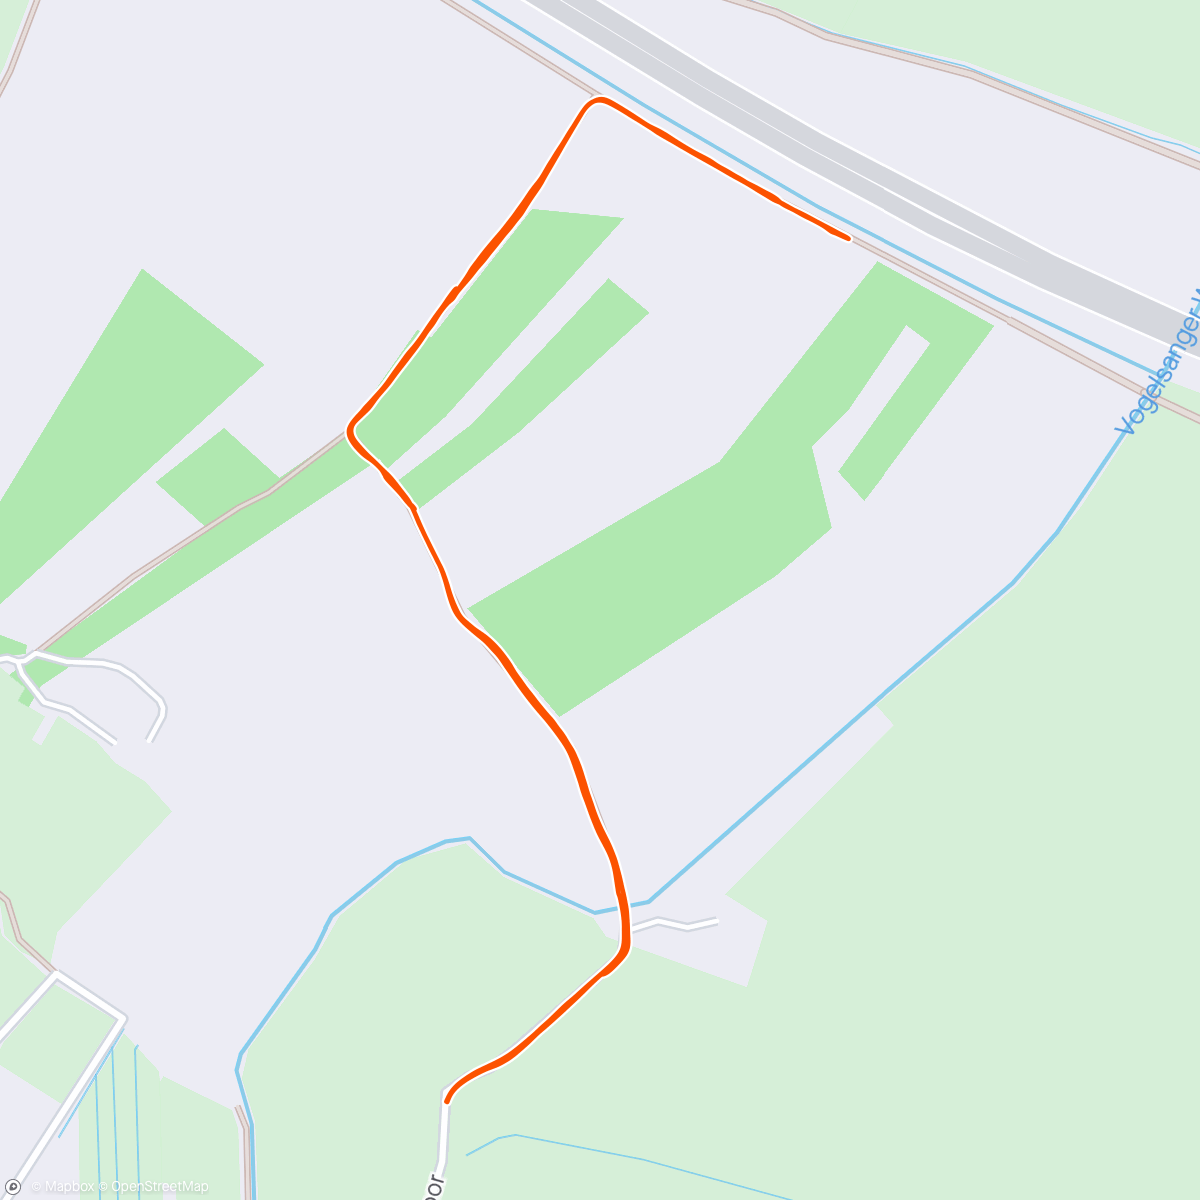 アクティビティ「☀ Spaziergang am Morgen」の地図